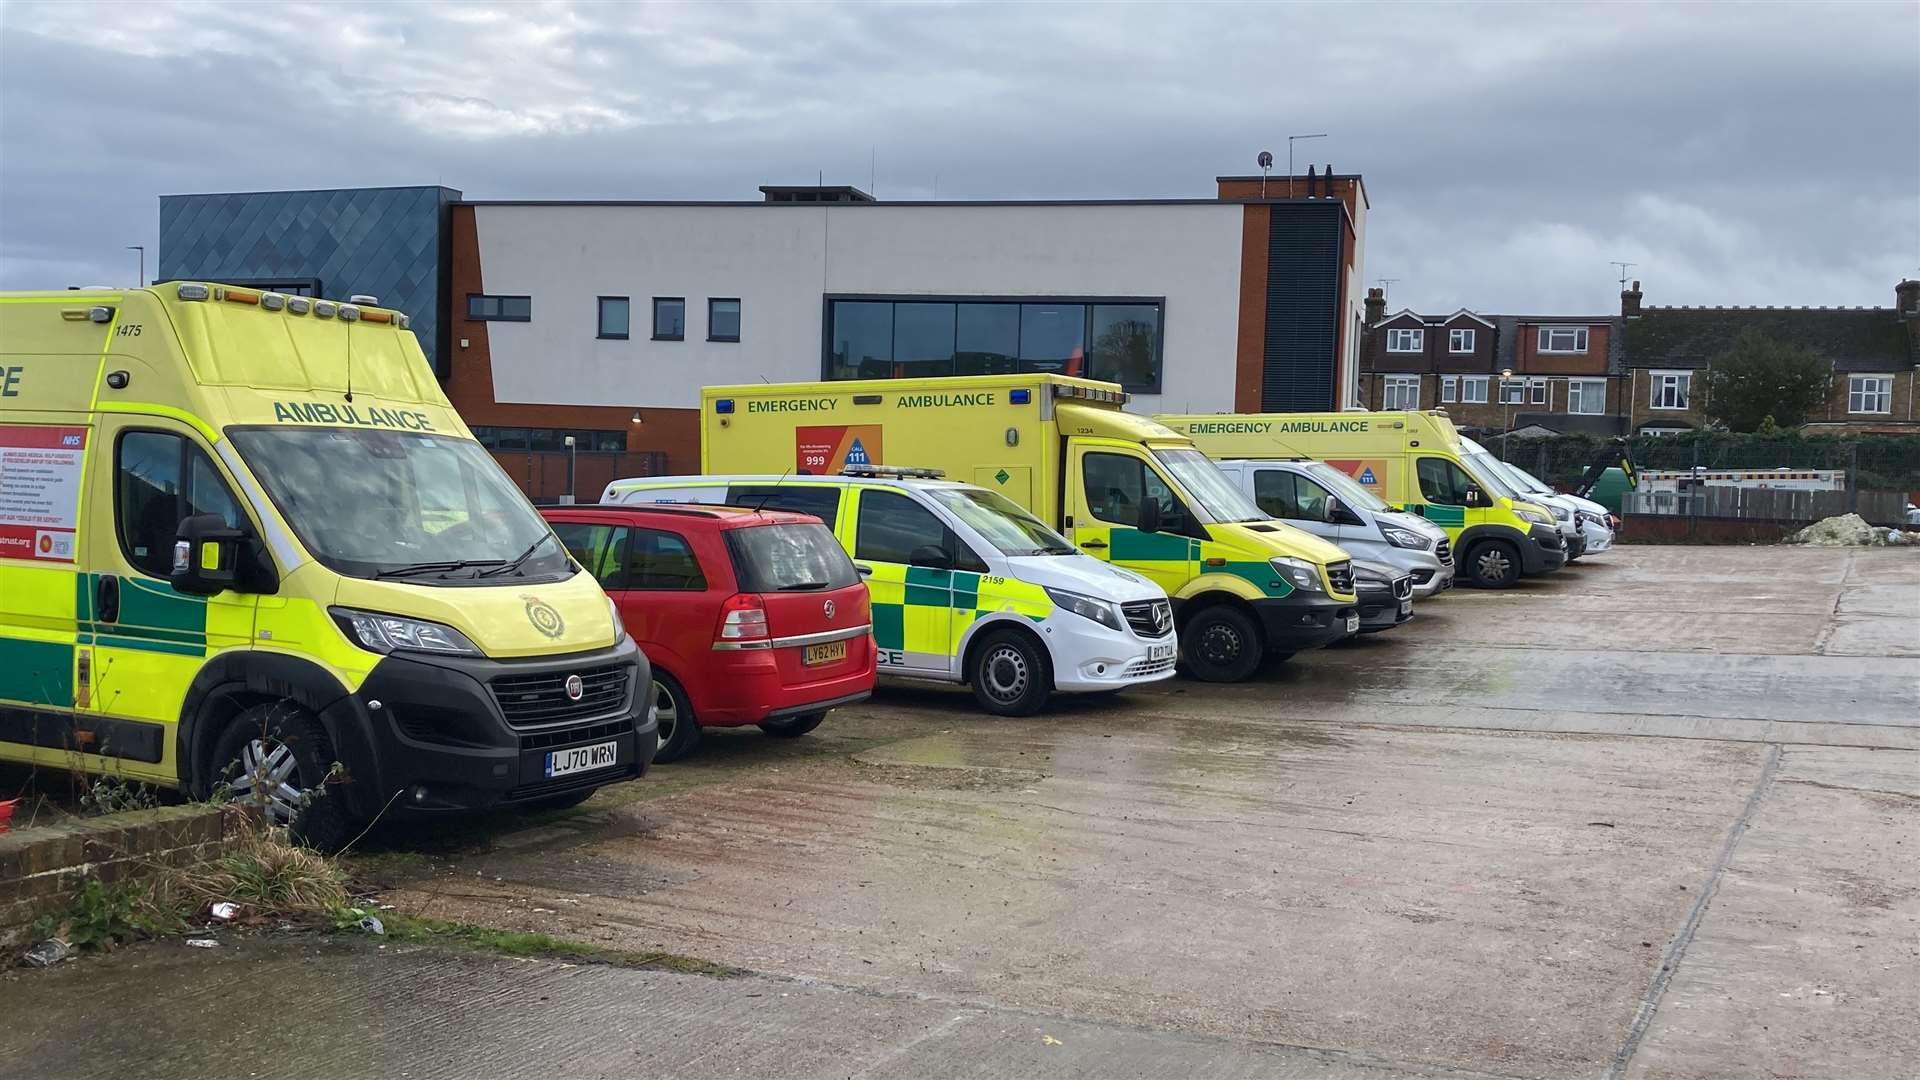 Ambulances at Medway station in Gillingham